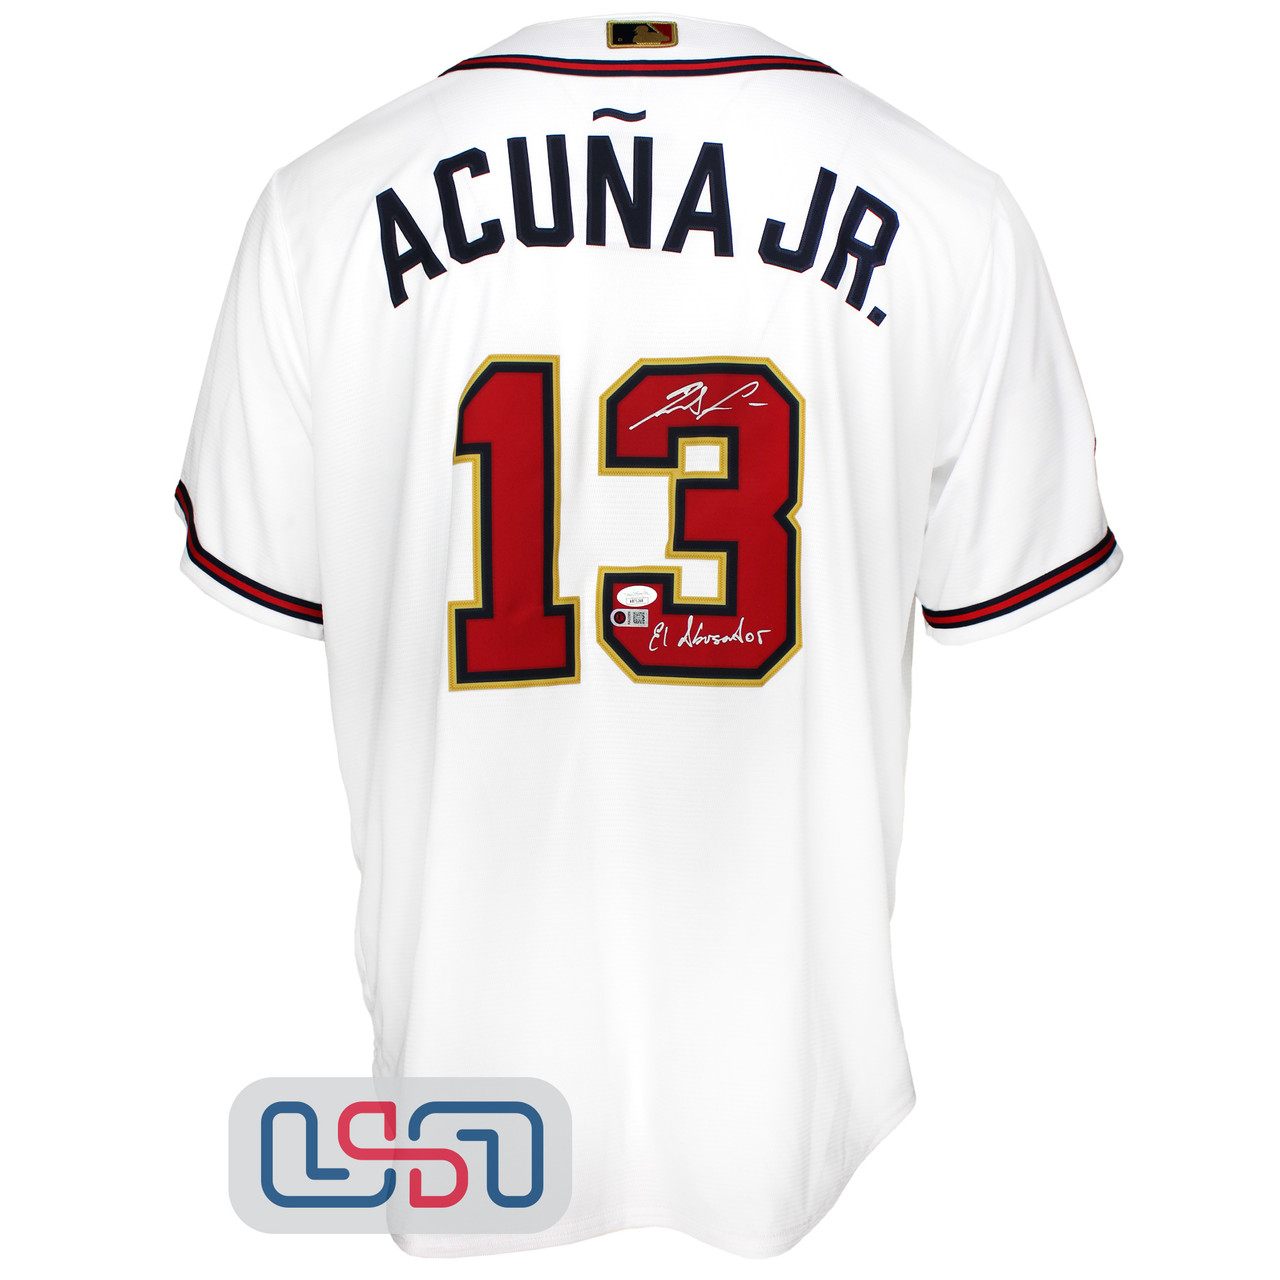 Ronald Acuna Jr. Signed Braves Nike Jersey (JSA & Acuna Jr